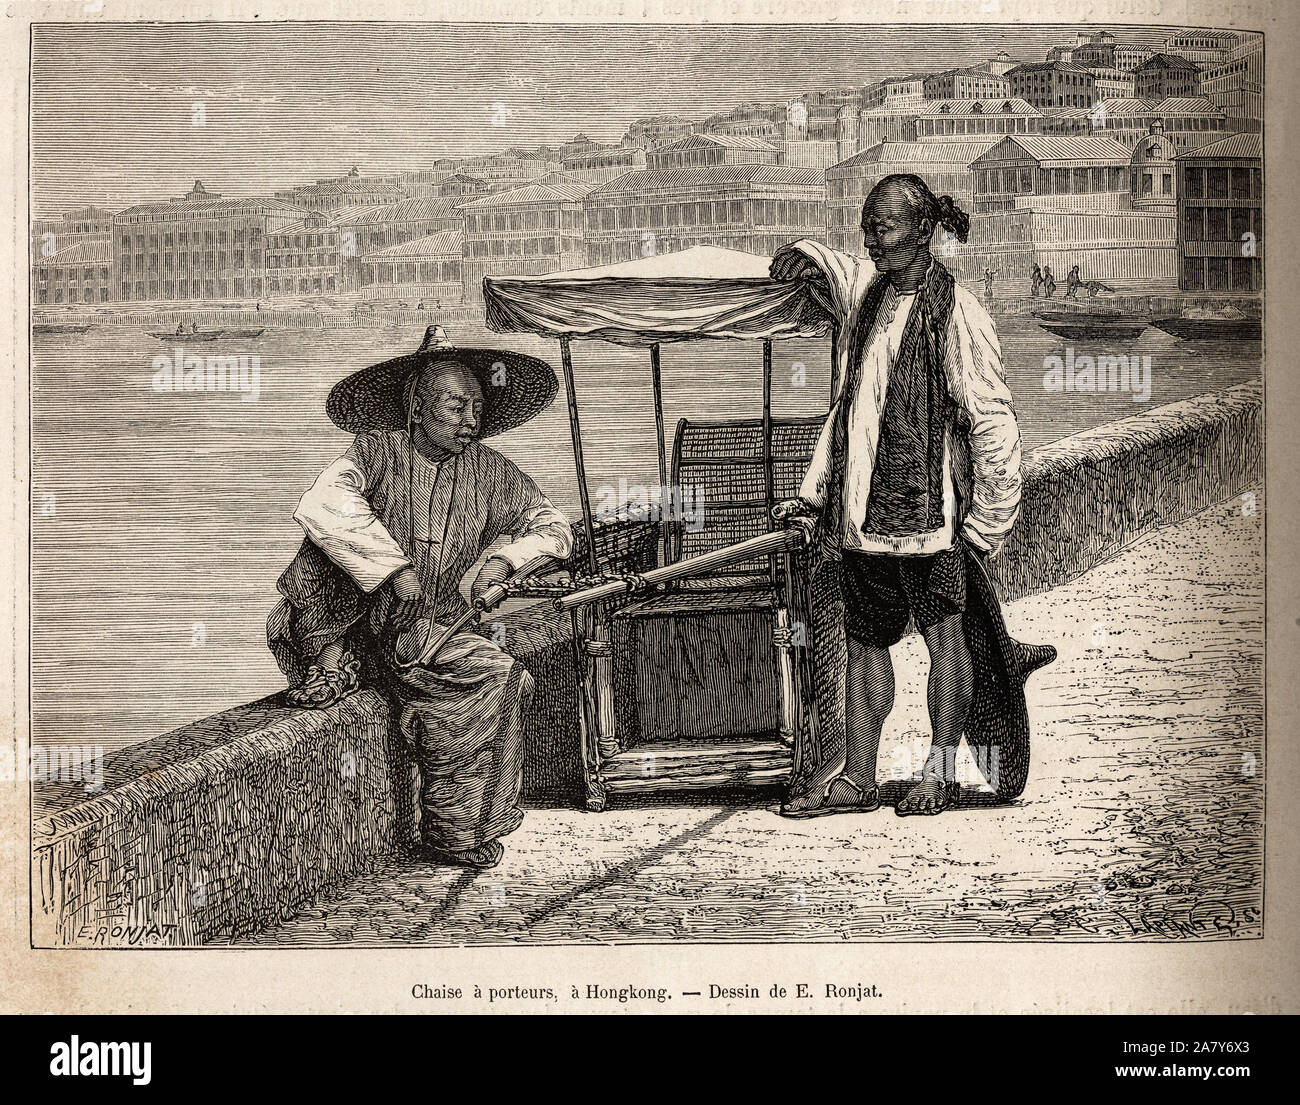 Deux porteurs au repos a cote de leur chaise a porteurs, a Hongkong, gravure d'apres un dessin de E. Ronjat illustrant le voyage en Chine, par J. Thom Stock Photo